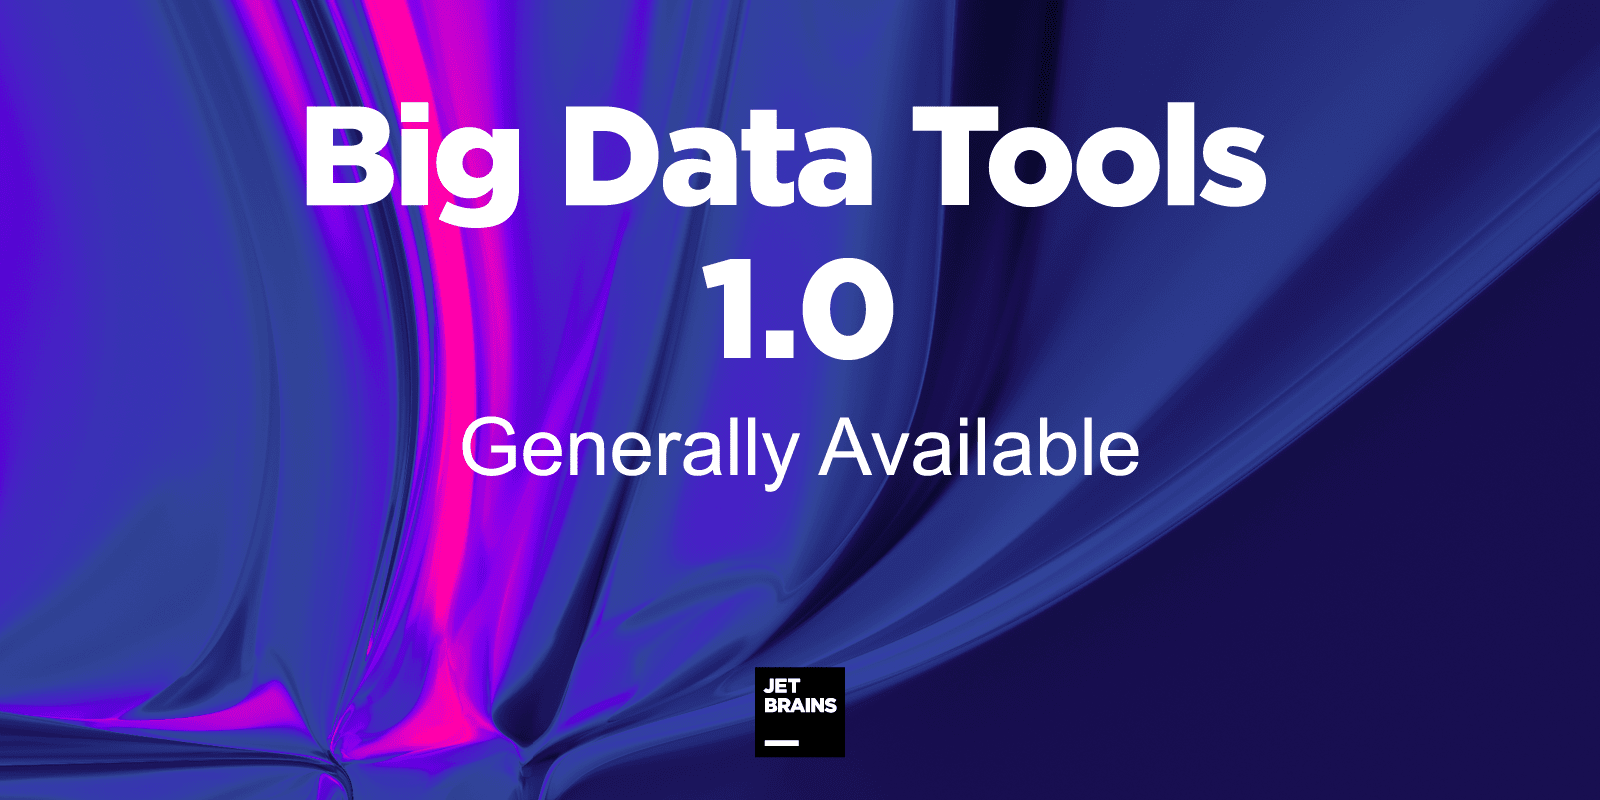 大数据工具1.0普遍可用